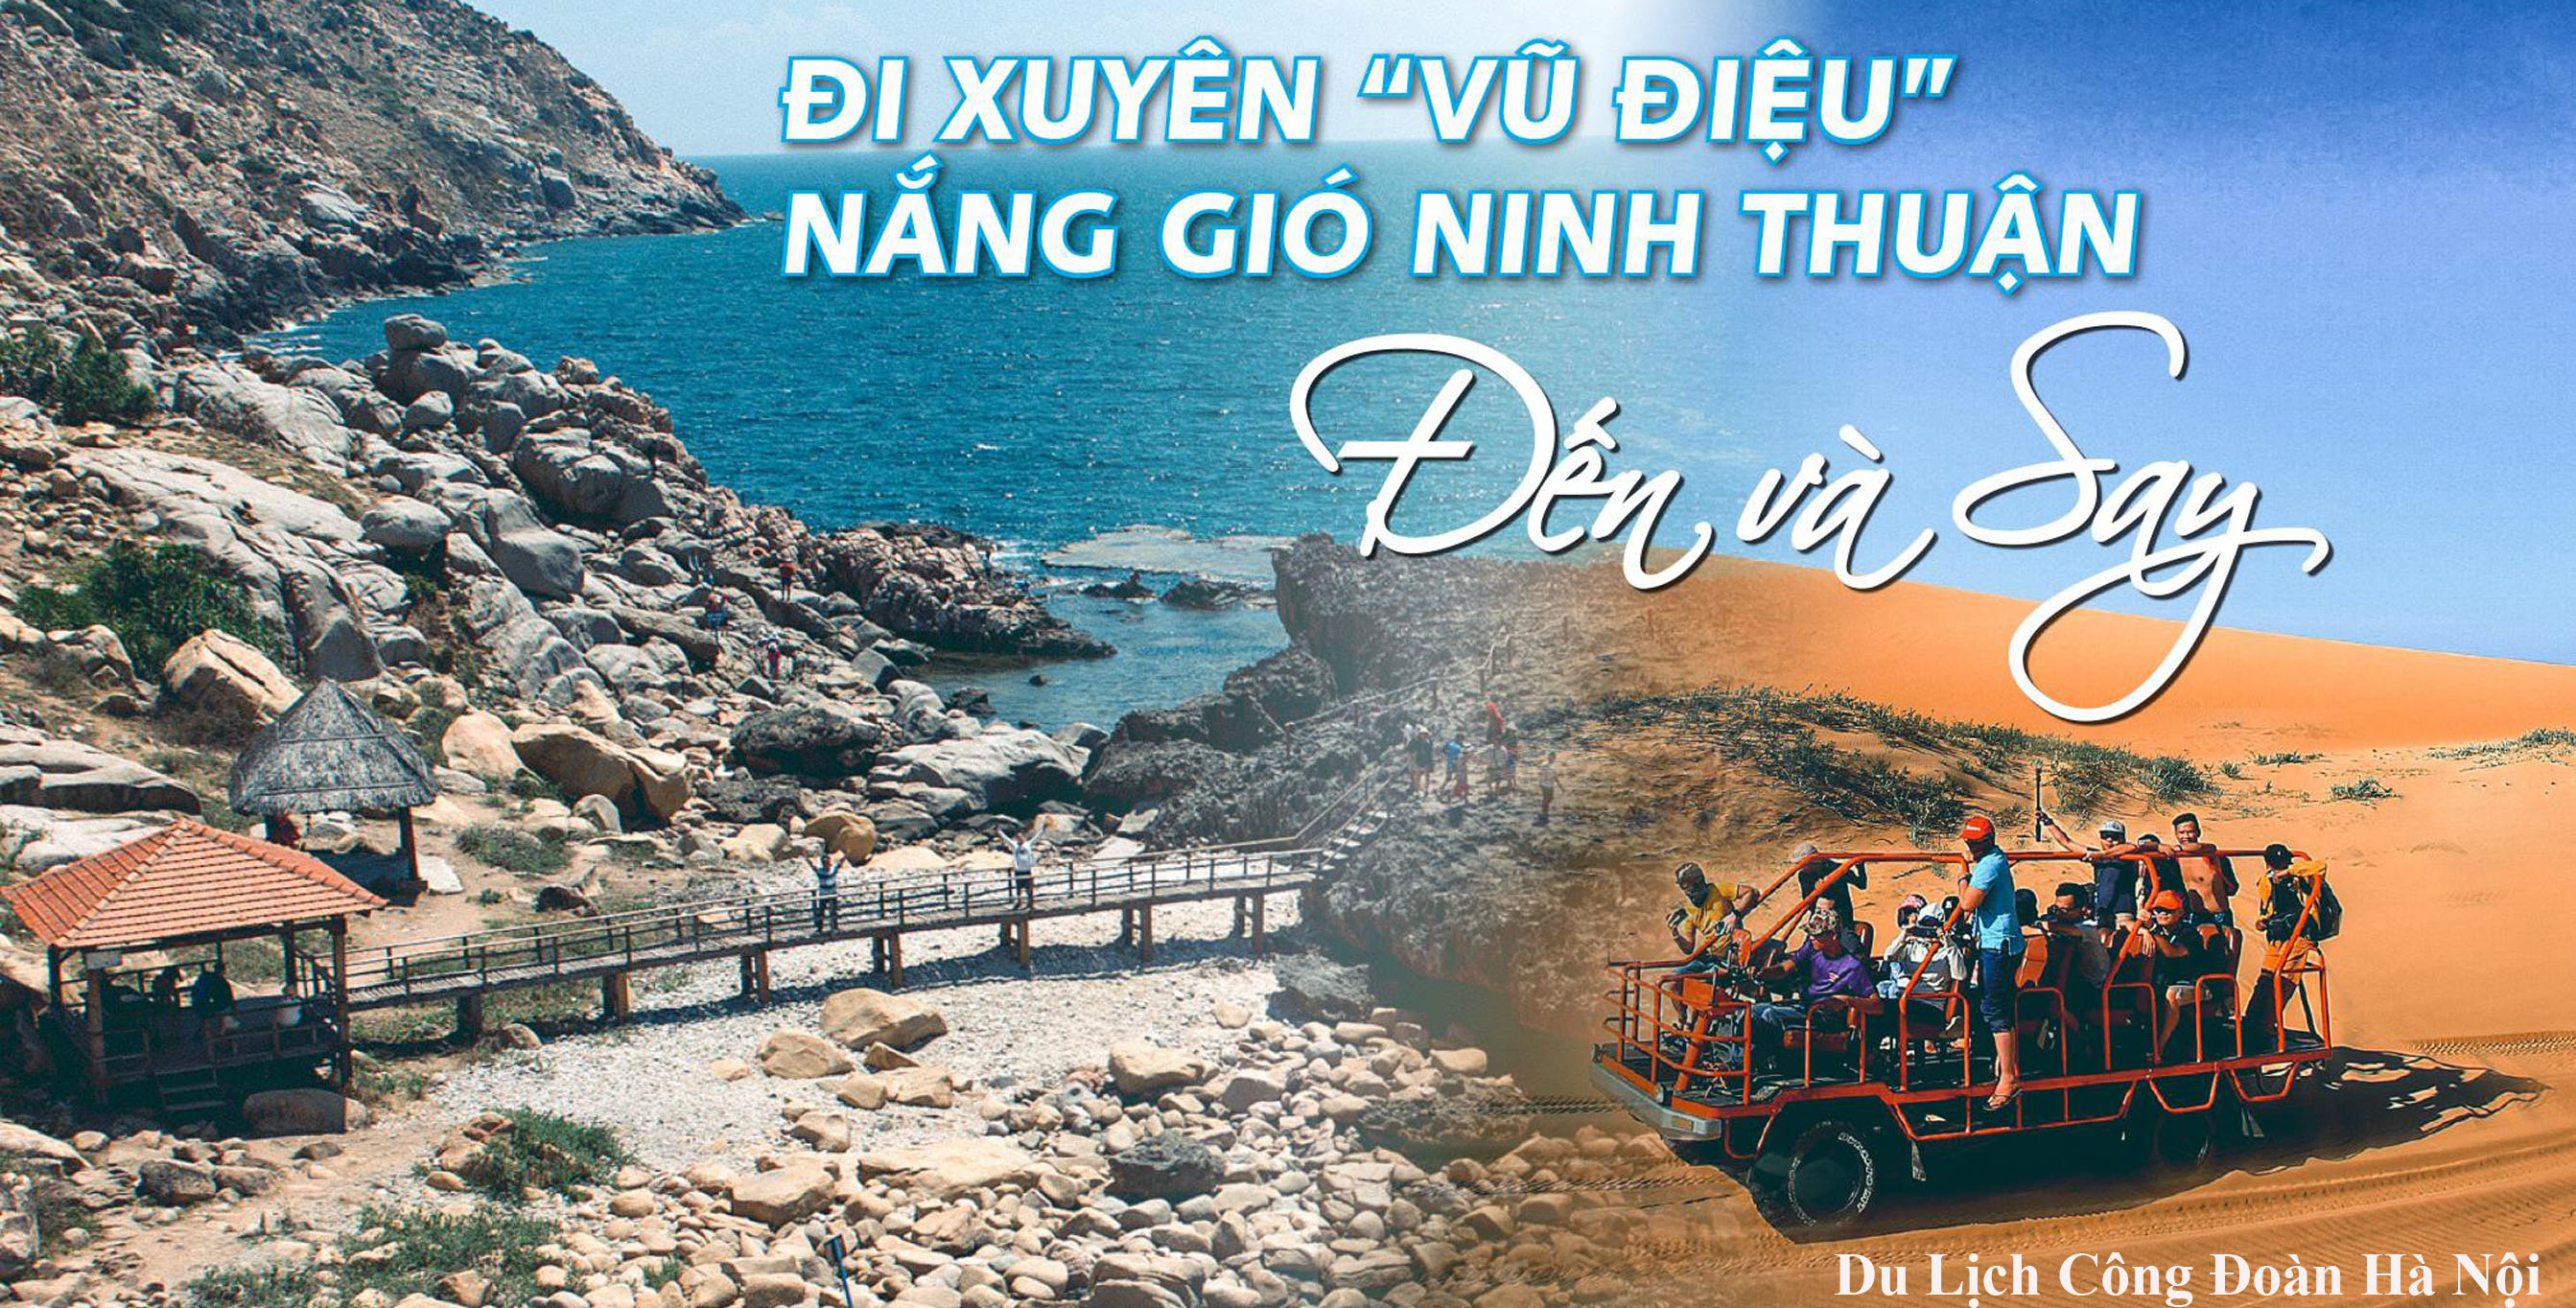 Hà Nội - Mũi Né - Ninh Thuận - Nha Trang - Hà Nội 